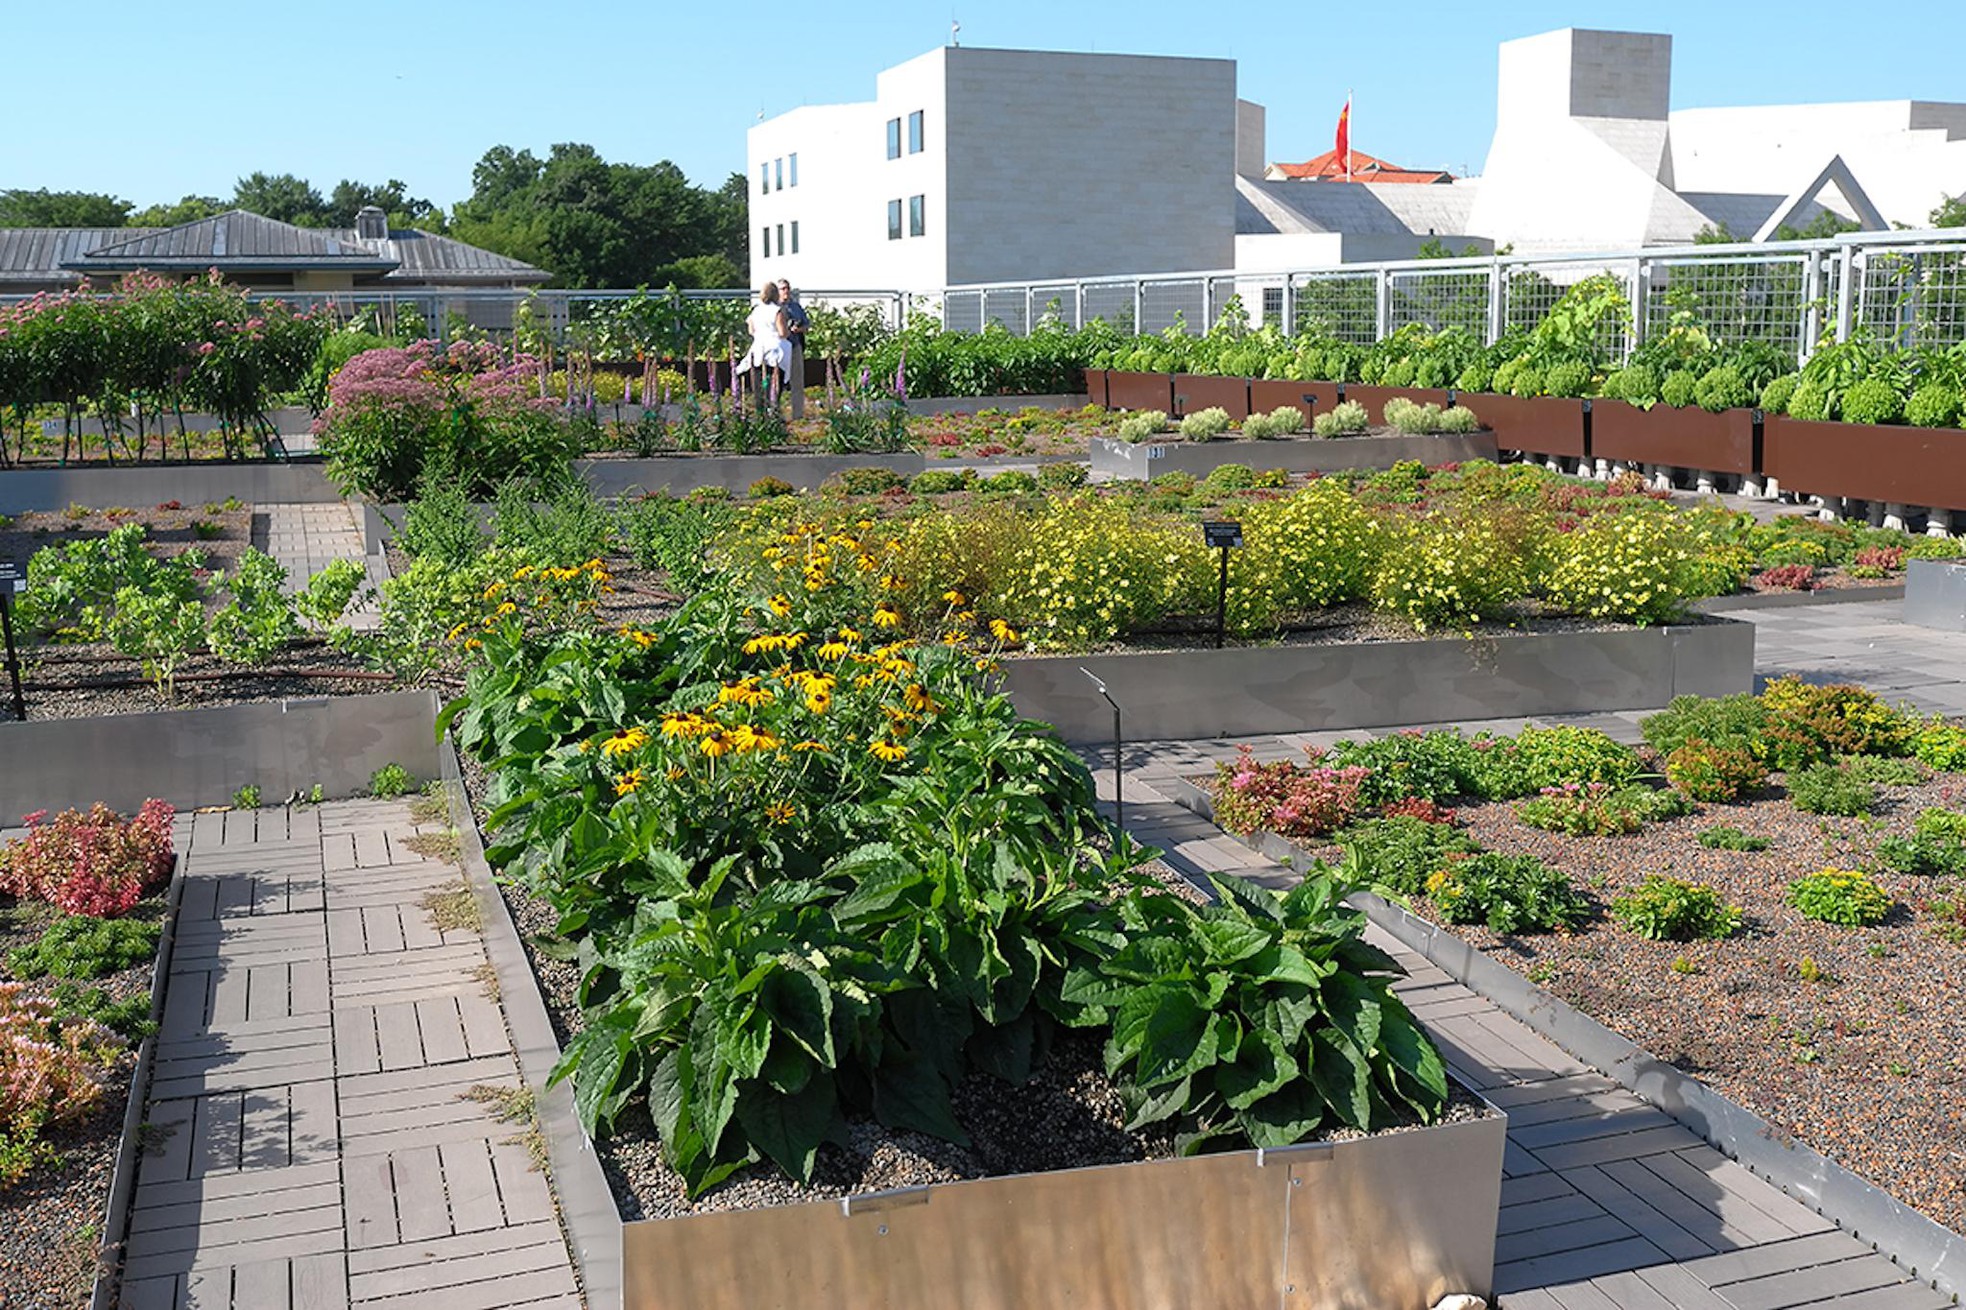 Khám phá 5 mô hình trồng rau trên sân thượng dễ áp dụng nhất hiện nay